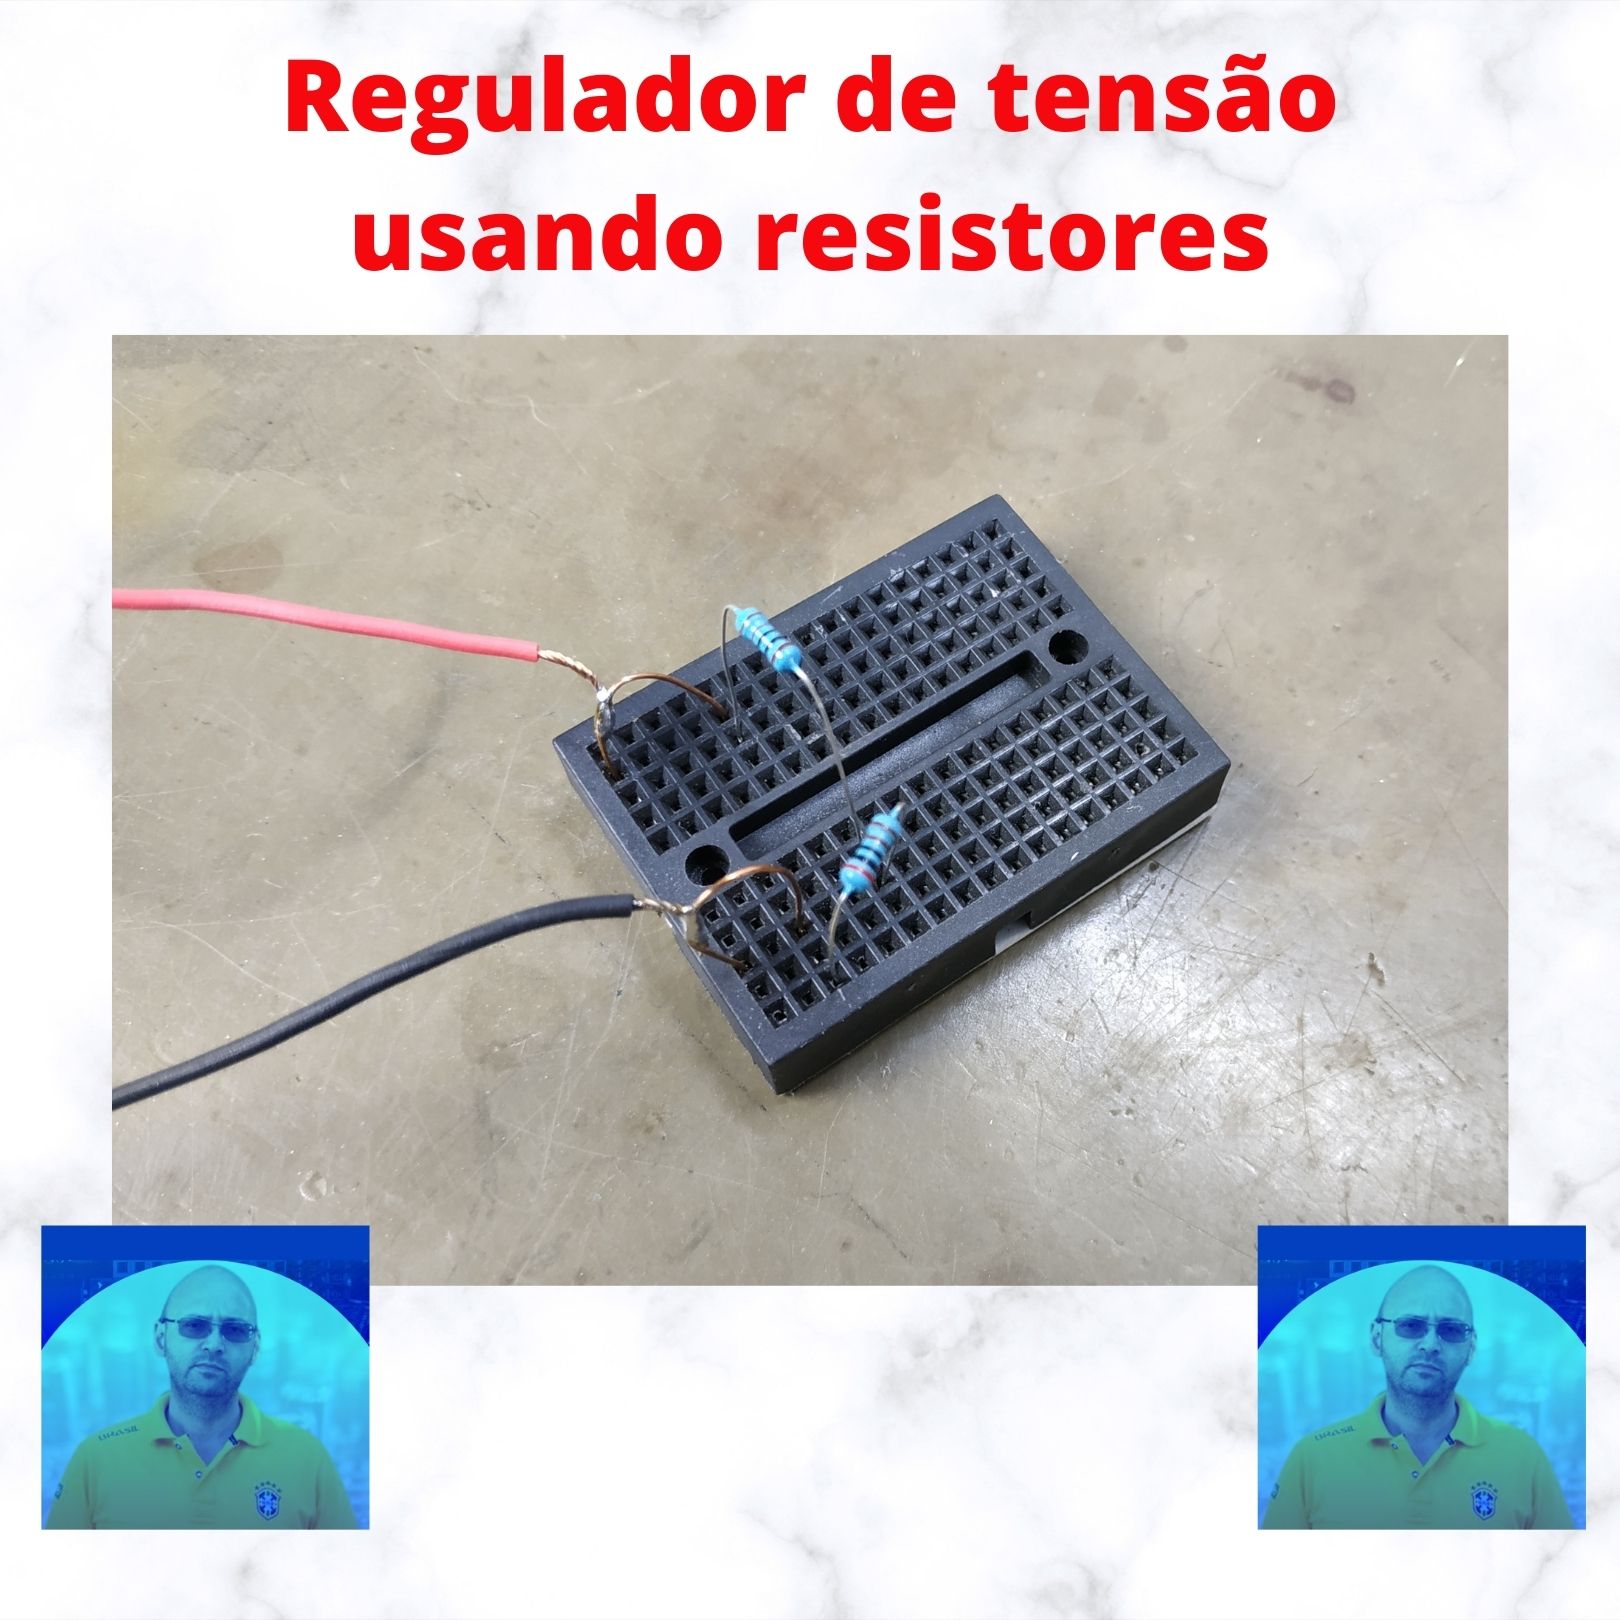 Regulador de tensao usando resistores insta